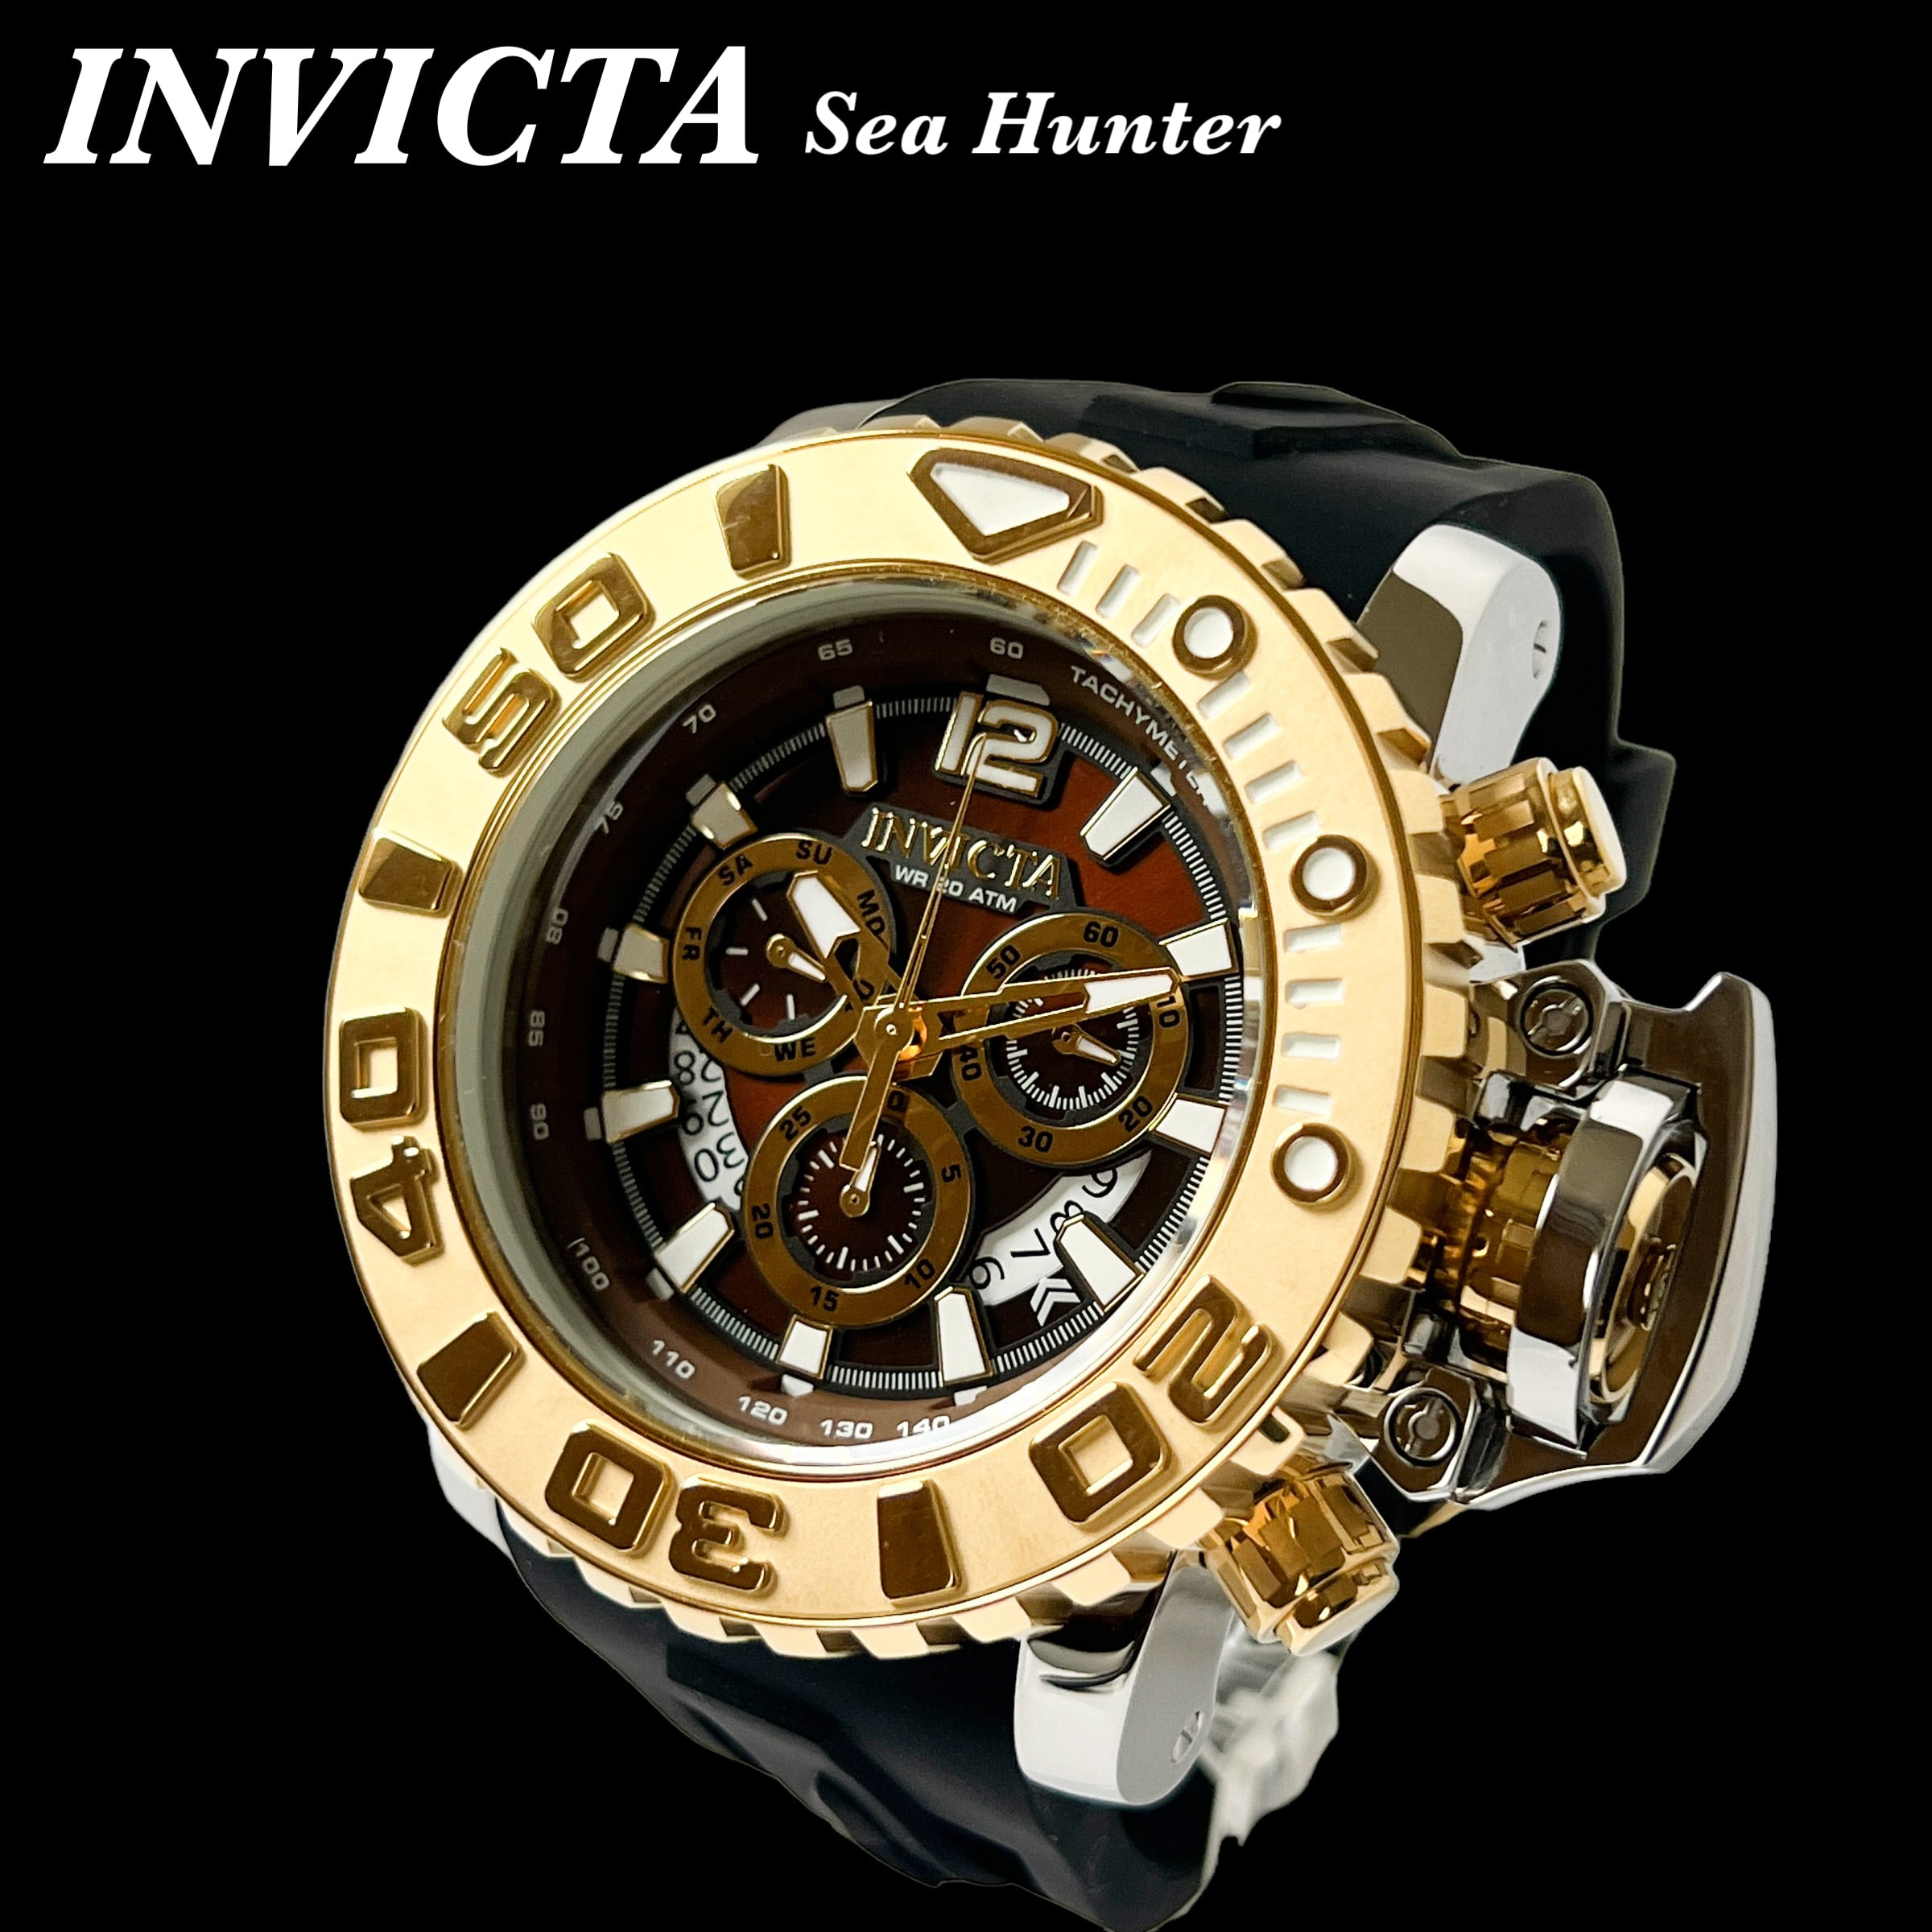 メンズ腕時計 おしゃれ INVICTA インビクタ 高級ブランド Sea Hunter